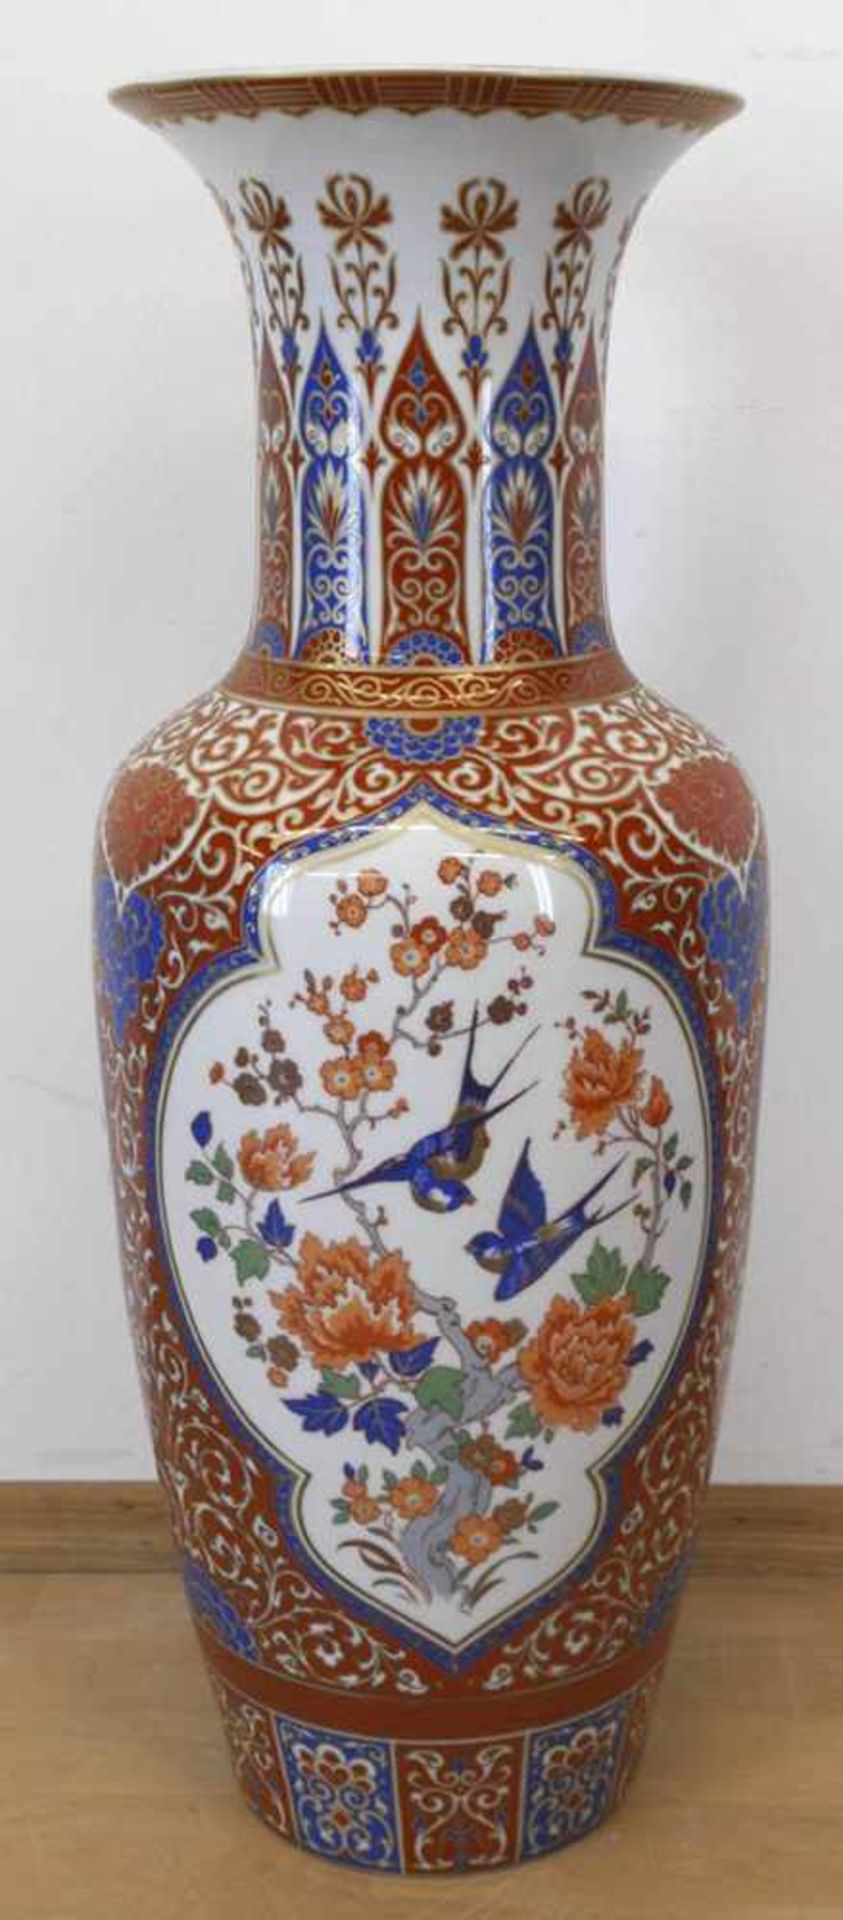 Große Bodenvase, Kaiser-Porzellan, "Ming", 3 Medaillons mit Vogel- und Floraldarstellungenin